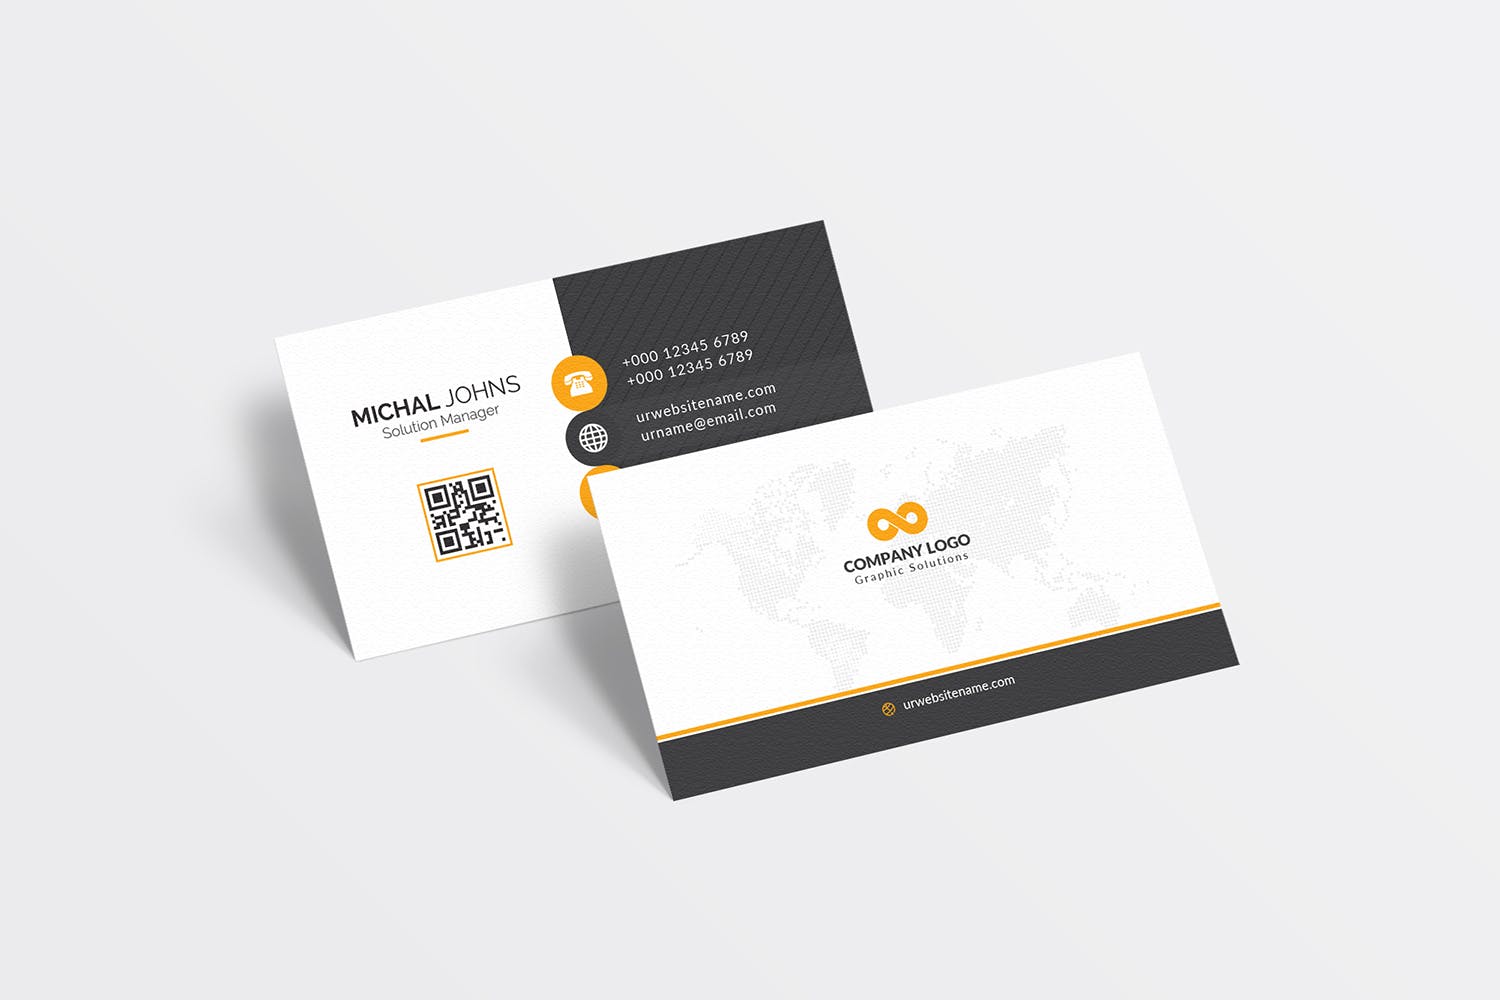 经典排版风格企业蚂蚁素材精选名片模板 Business Card插图(3)